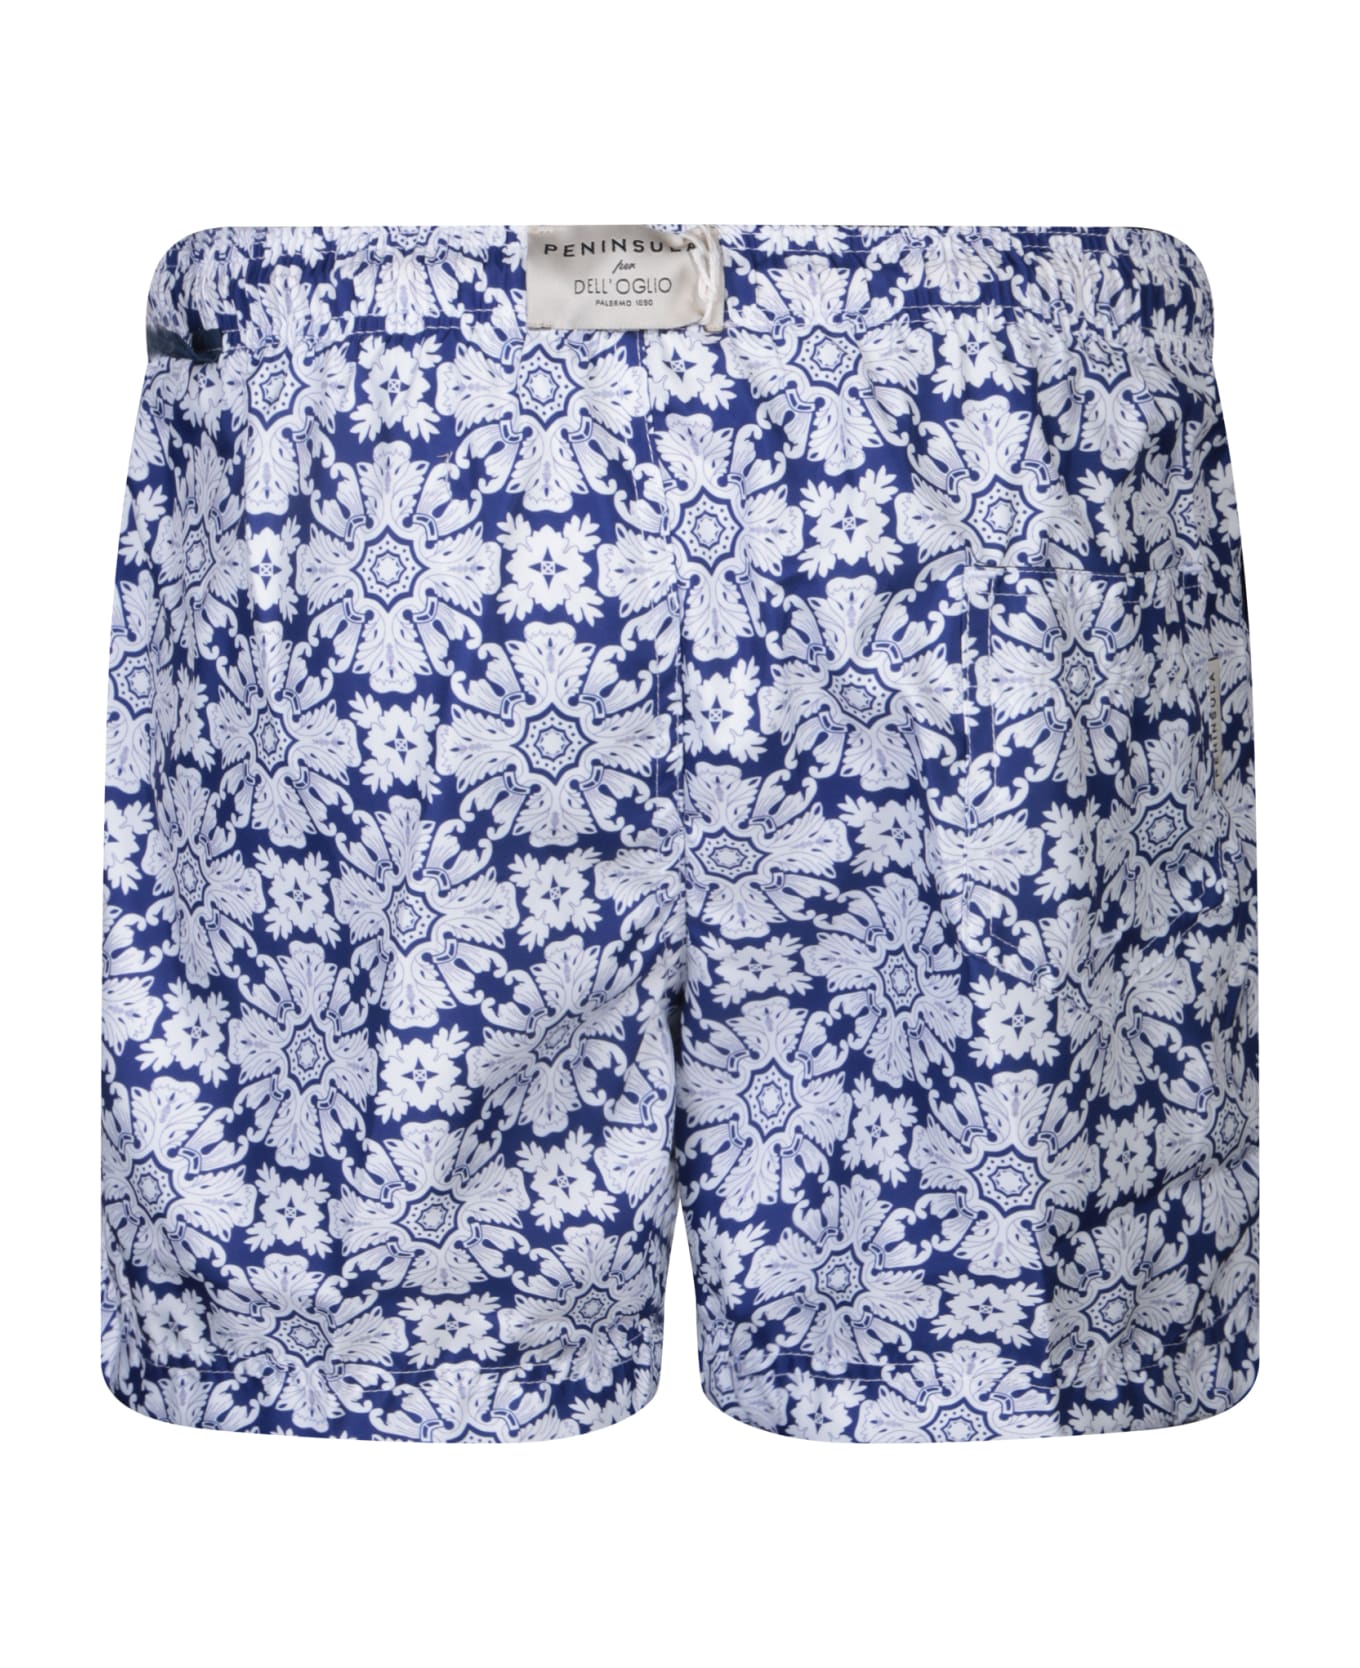 Peninsula Swimwear Floral Pattern Swim Shorts White/blue By Peninsula - Blue